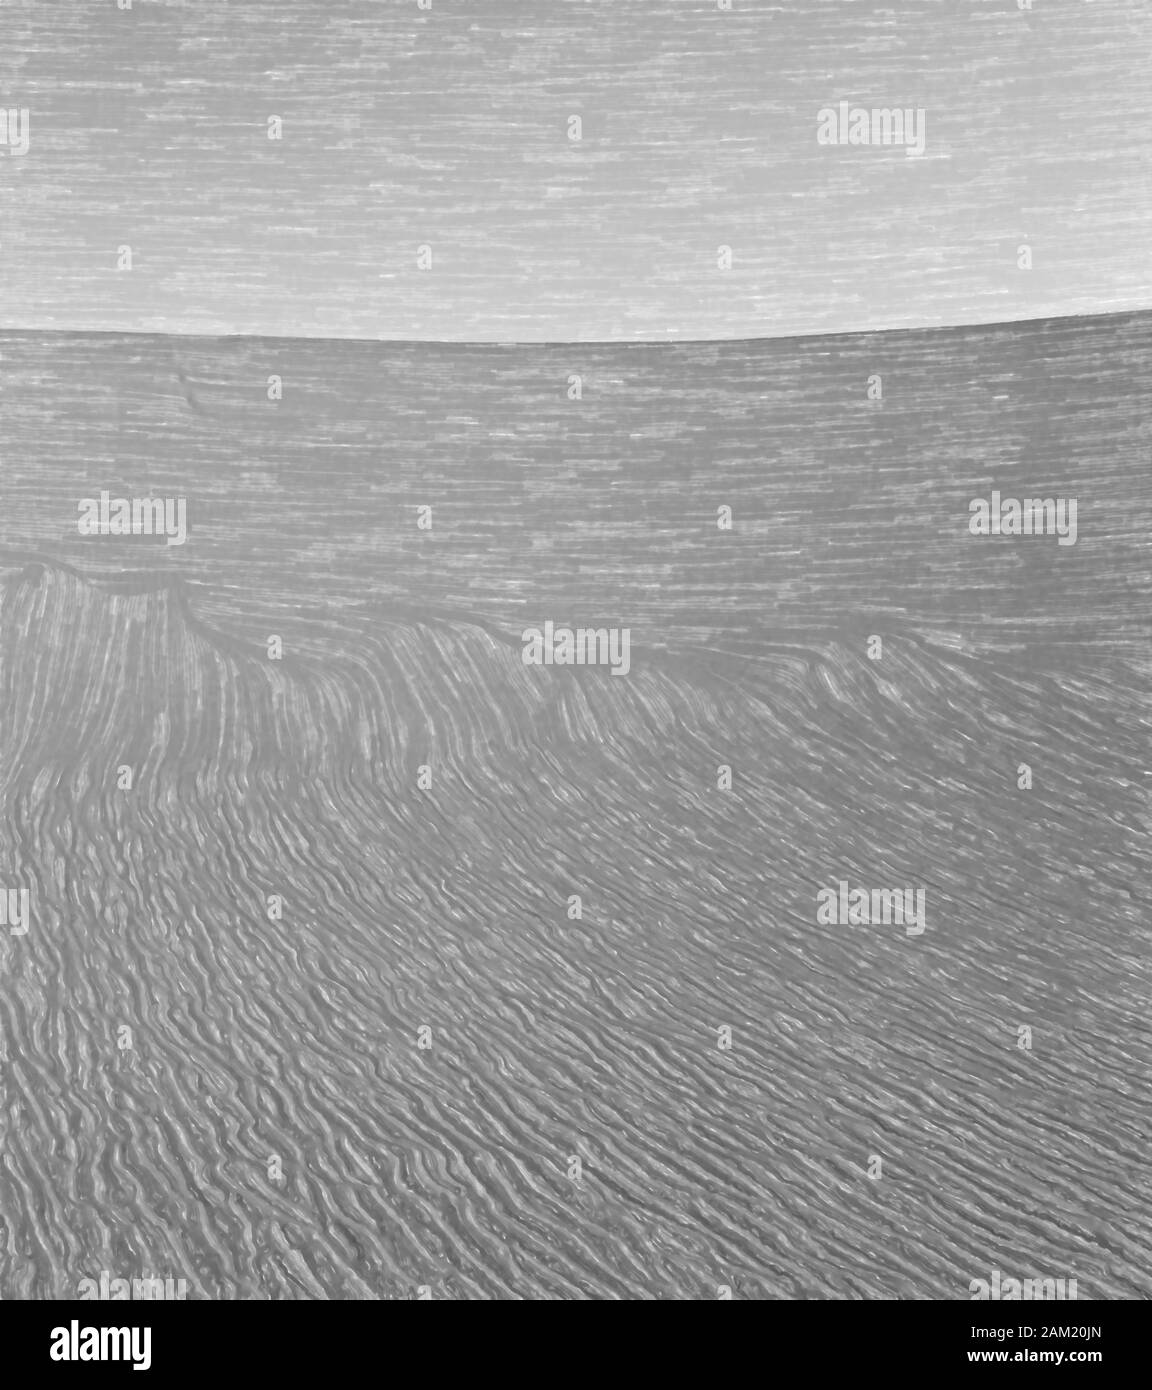 Illustrazione acquerello: Immagine astratta della superficie di una duna nel Sahara in Sudan, africa, bianco e nero Foto Stock